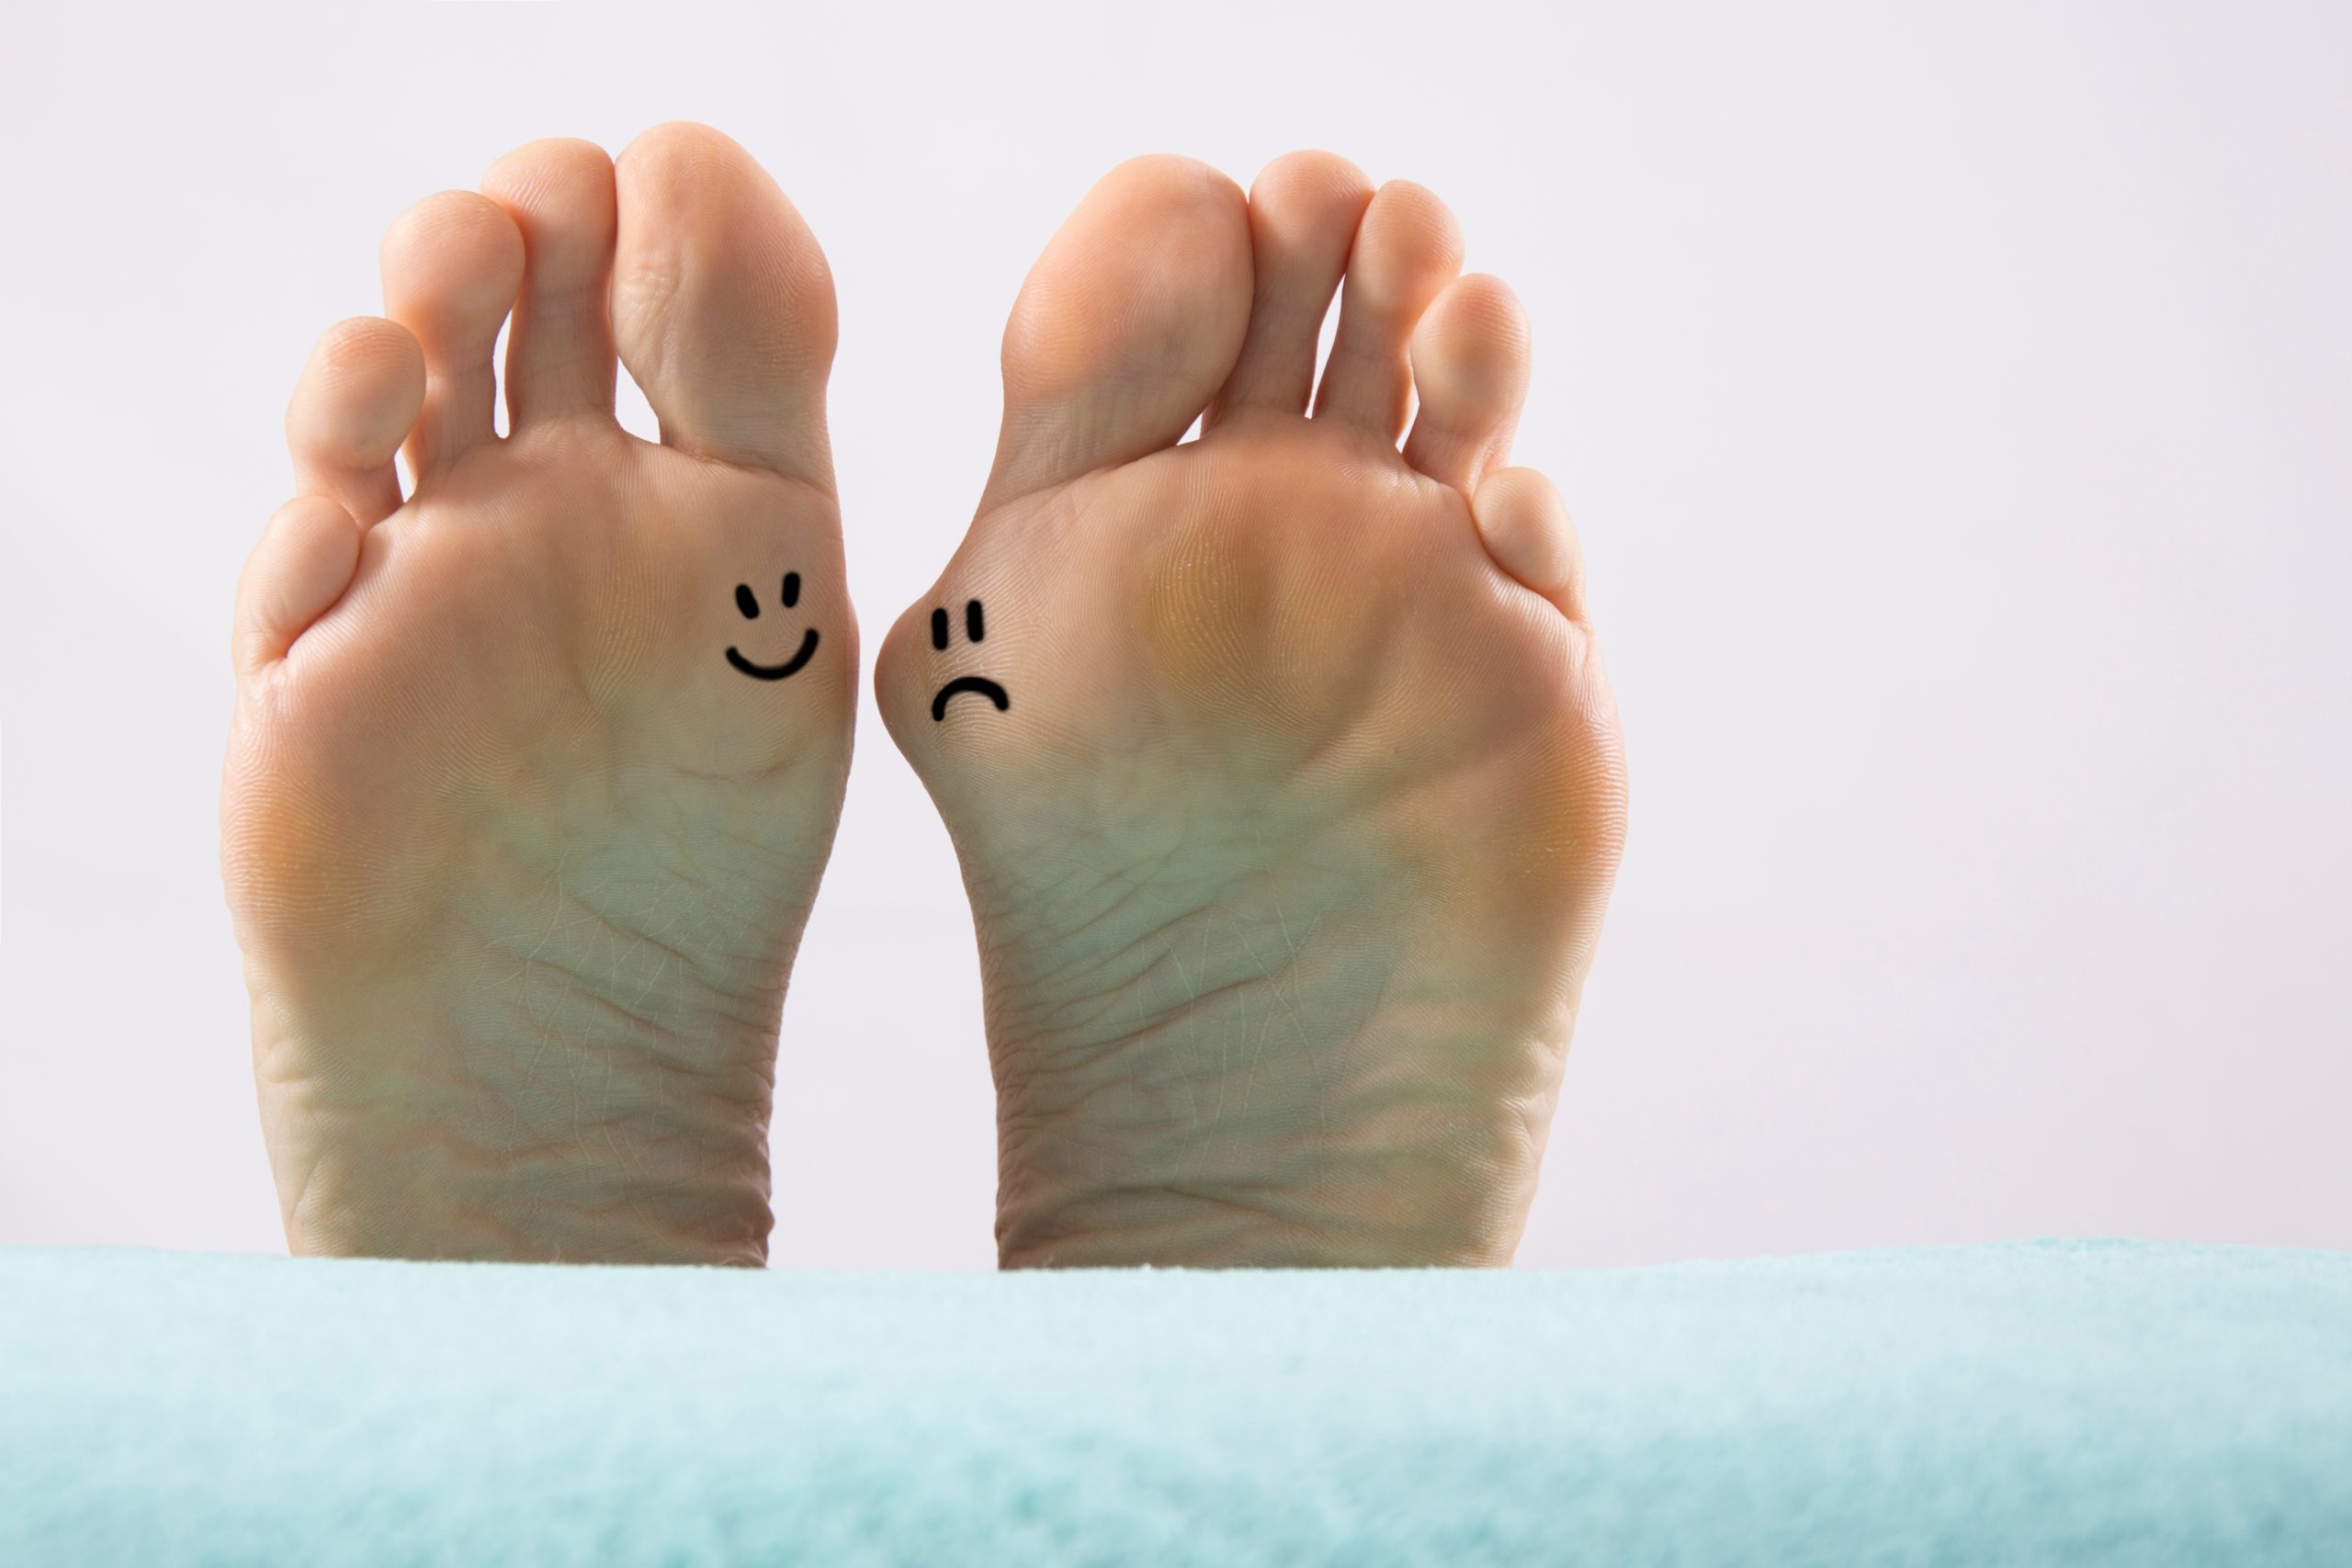 Zwei Füße nebeneinander: Links ein gesunder auf dem mit schwarzem Filzstift ein lachendes Gesicht aufgemalt ist - rechts ein Fuß mit einer Beule, dem Hallux valgus